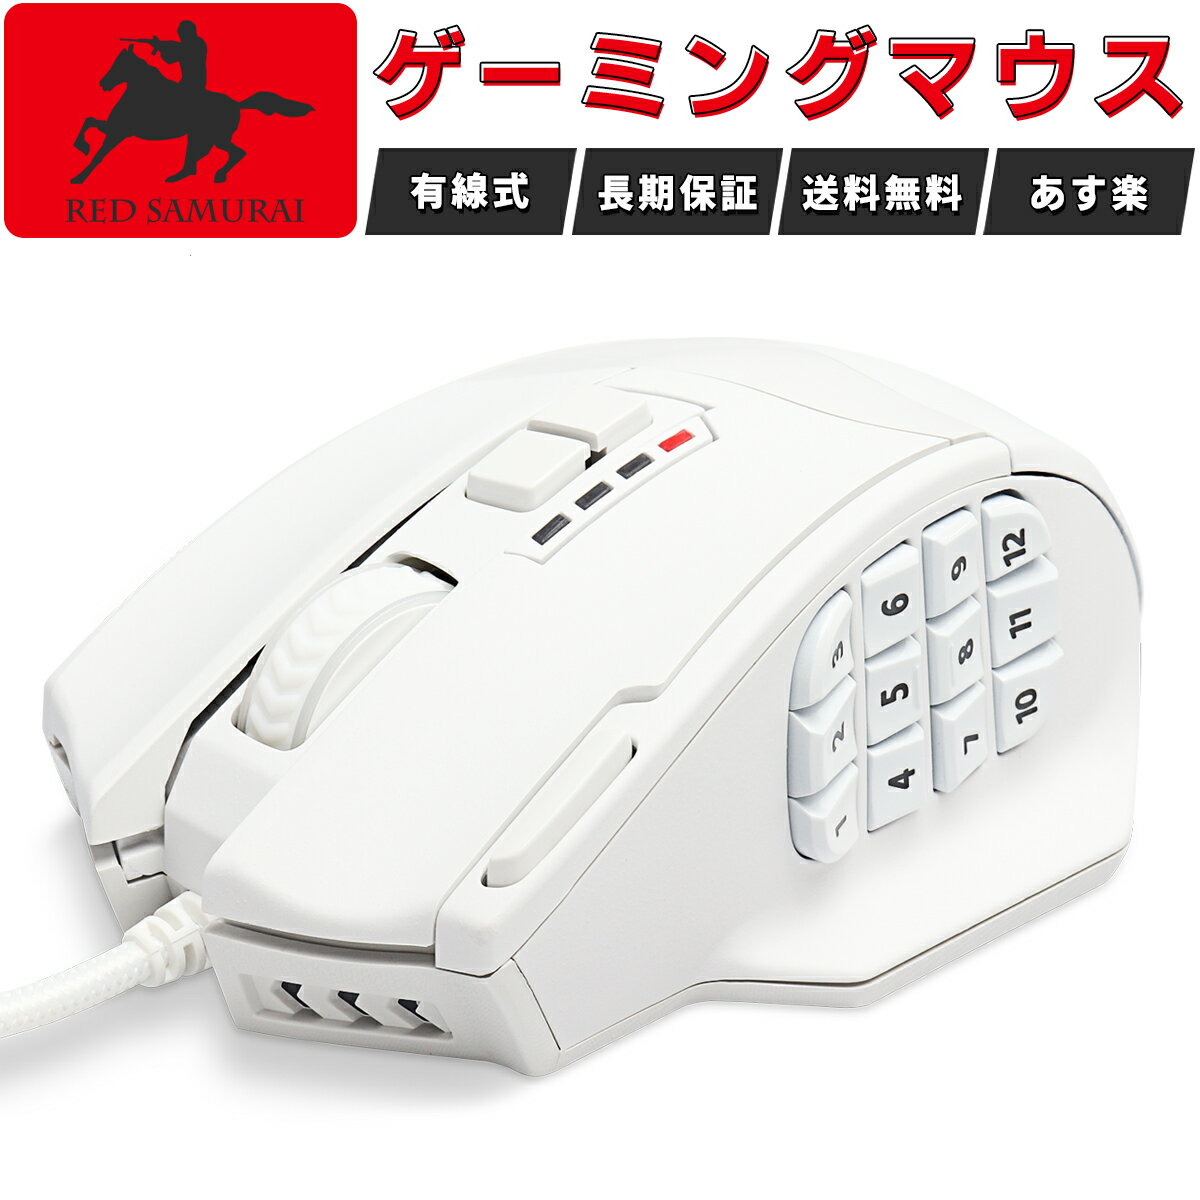 【 RED SAMURAI 】ゲーミングマウス 有線 マウス 16400dpi 1000Hz HKW-GMMS01-WH プログラムボタン サイドボタン ウ…